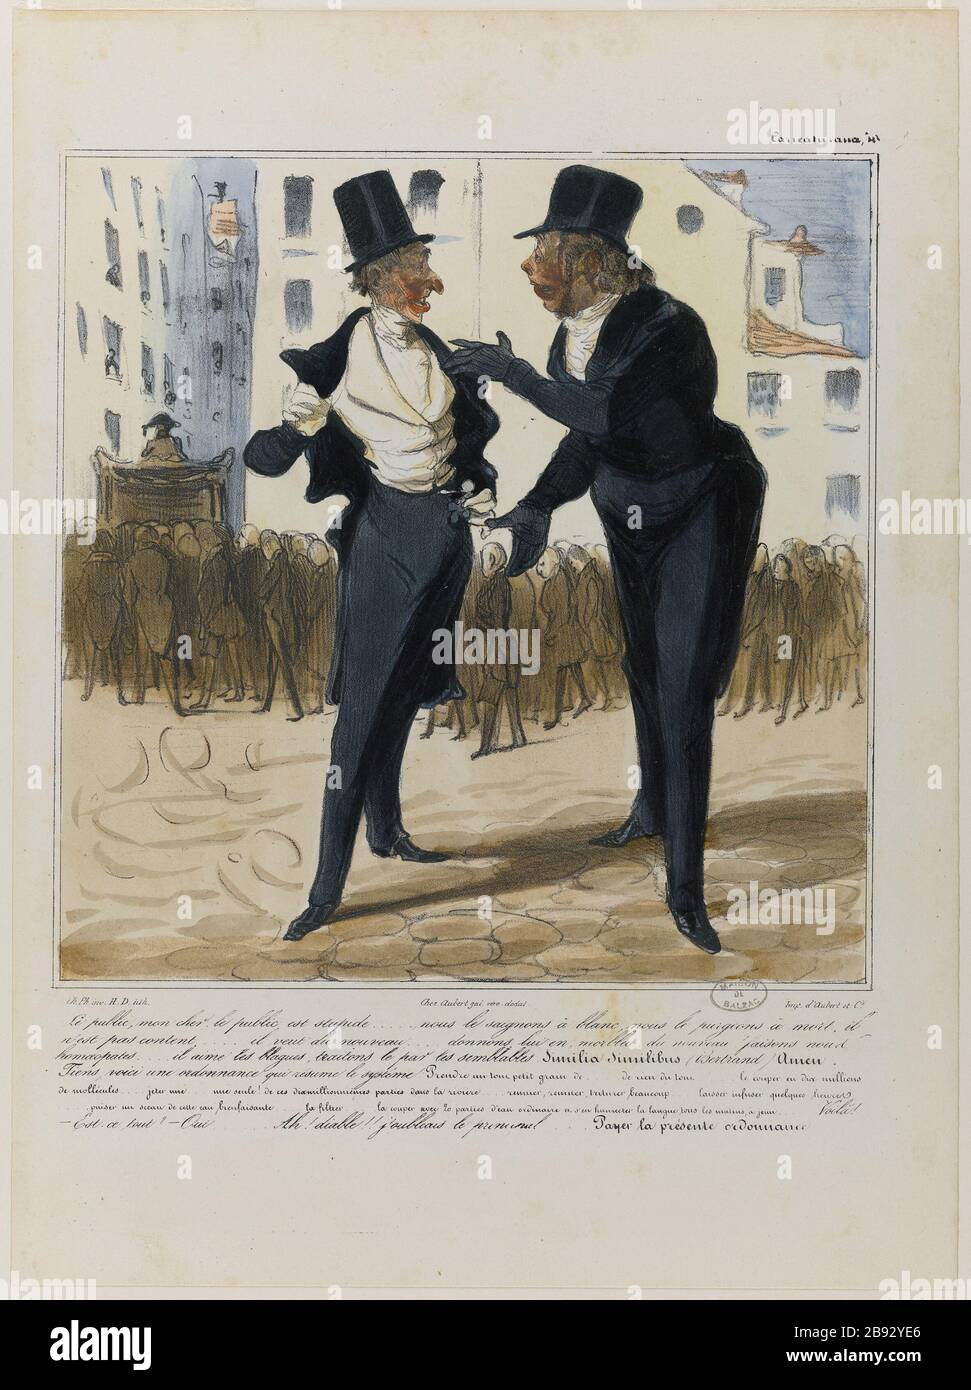 THE PUBLIC, MY DEAR, THE PUBLIC IS STUPID .. Honoré Daumier (1808-1879). 'Le public, mon cher, le public est stupide...'. Lithographie coloriée et gommée. 1836-1838. Paris, Maison de Balzac. Stock Photo